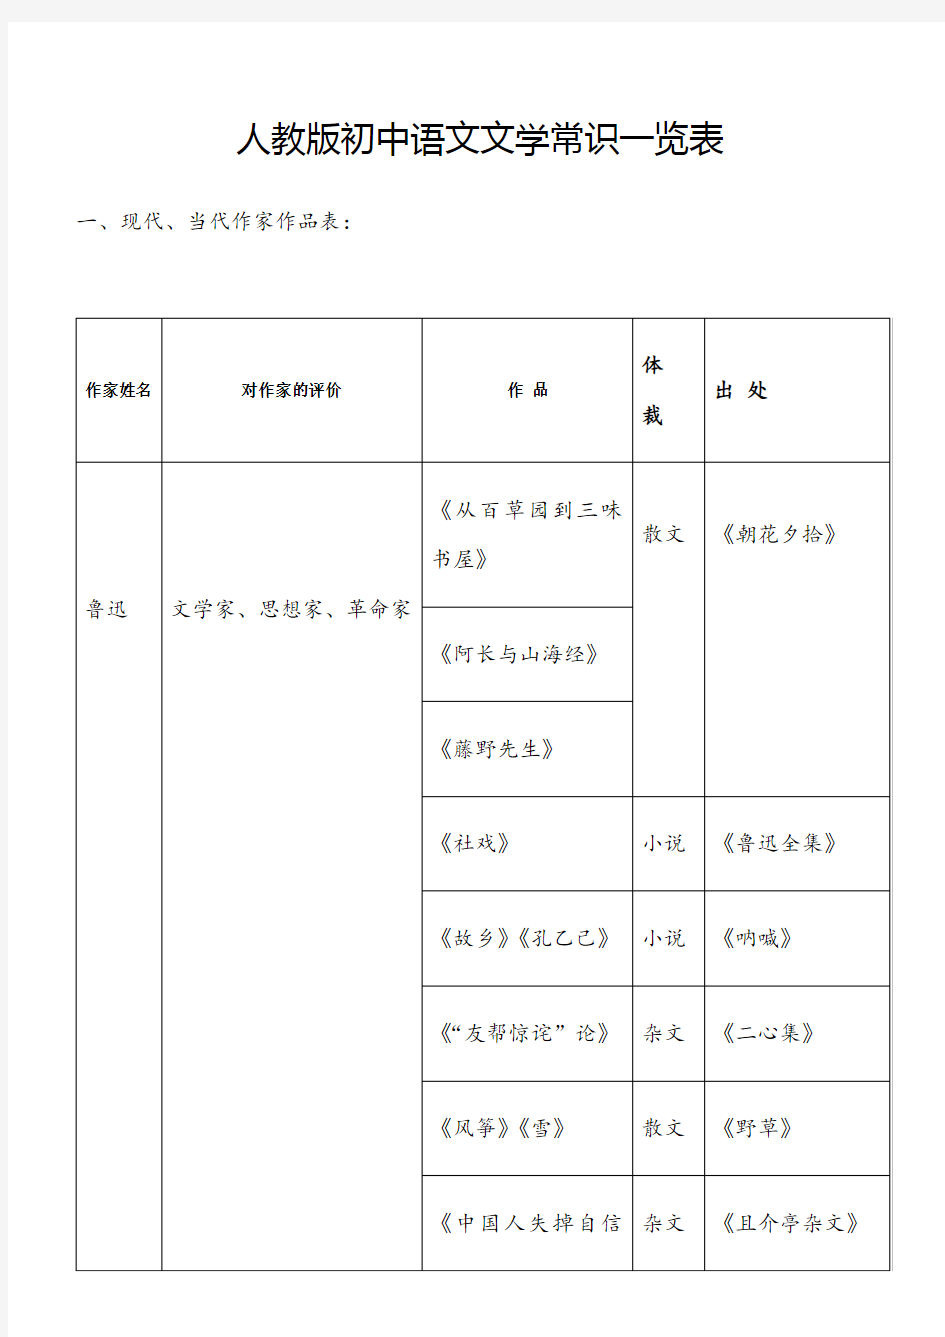 人教版初中语文文学常识一览表